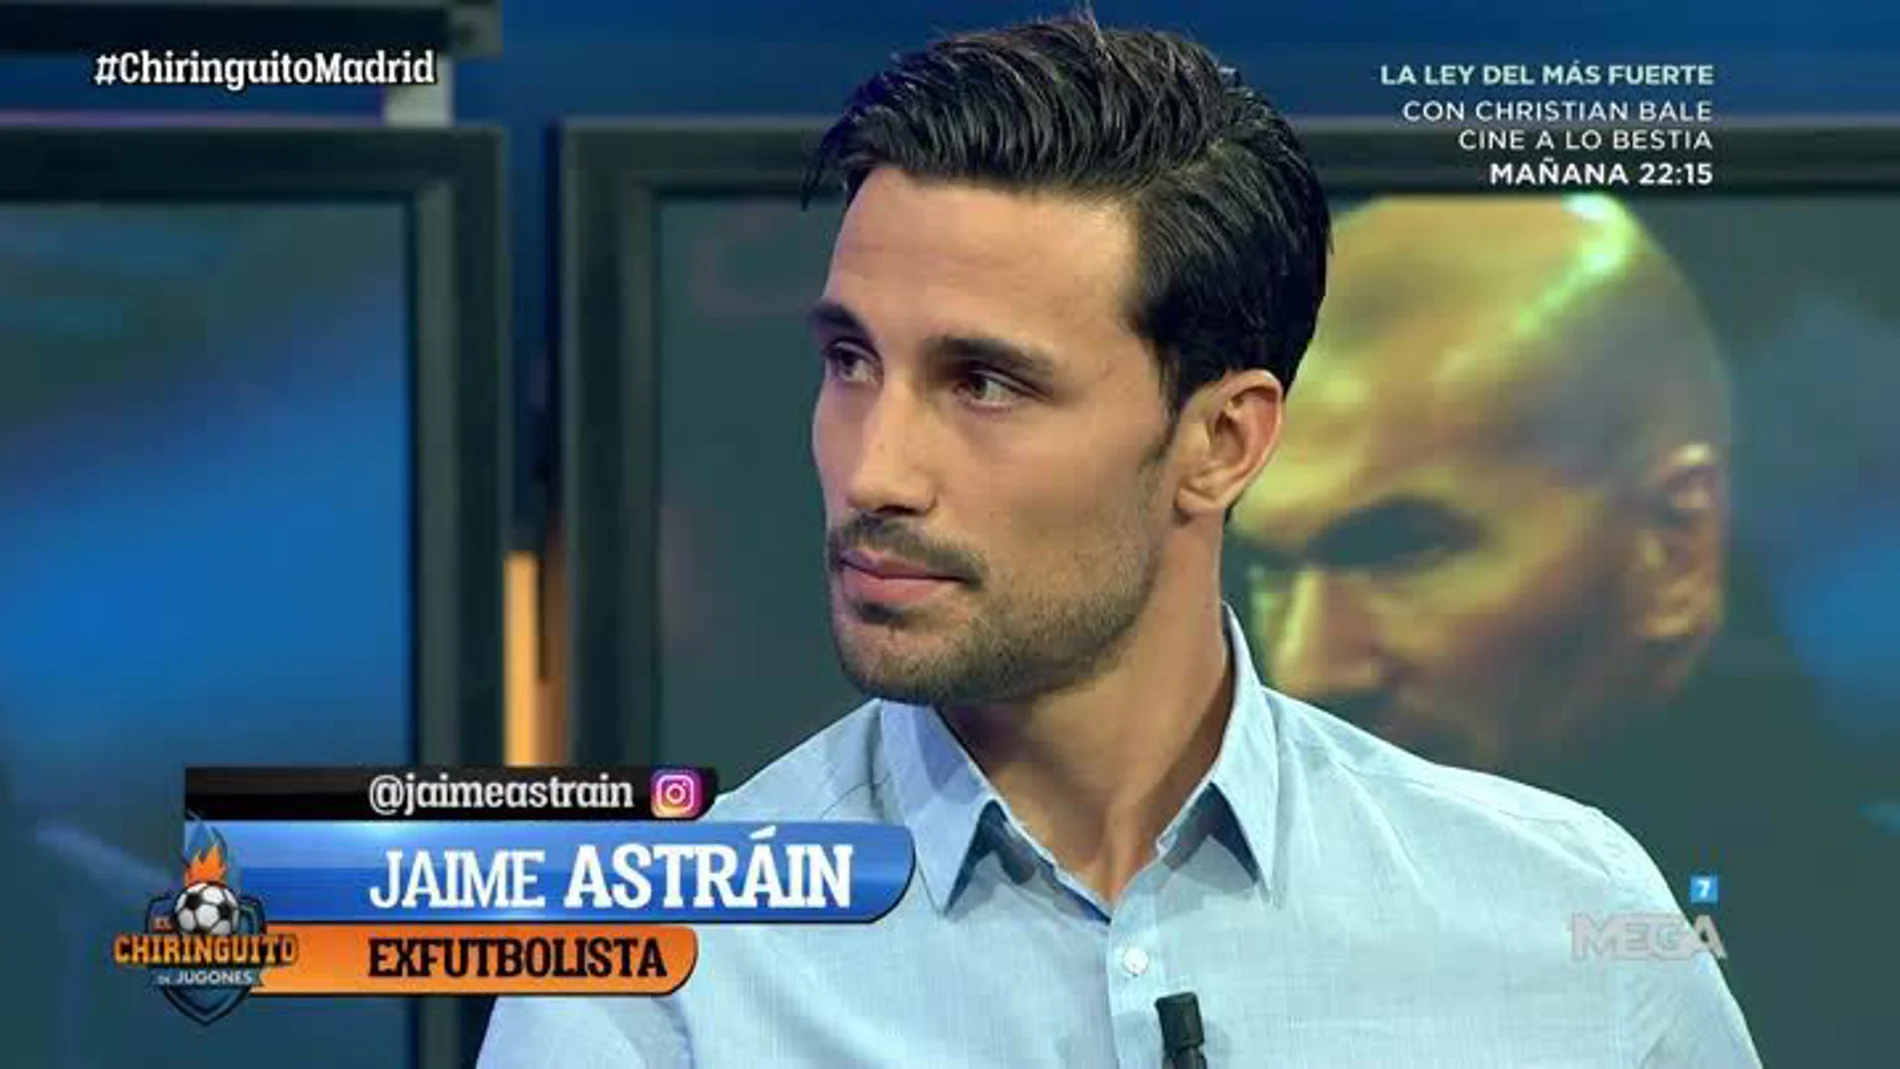 Jaime Astraín